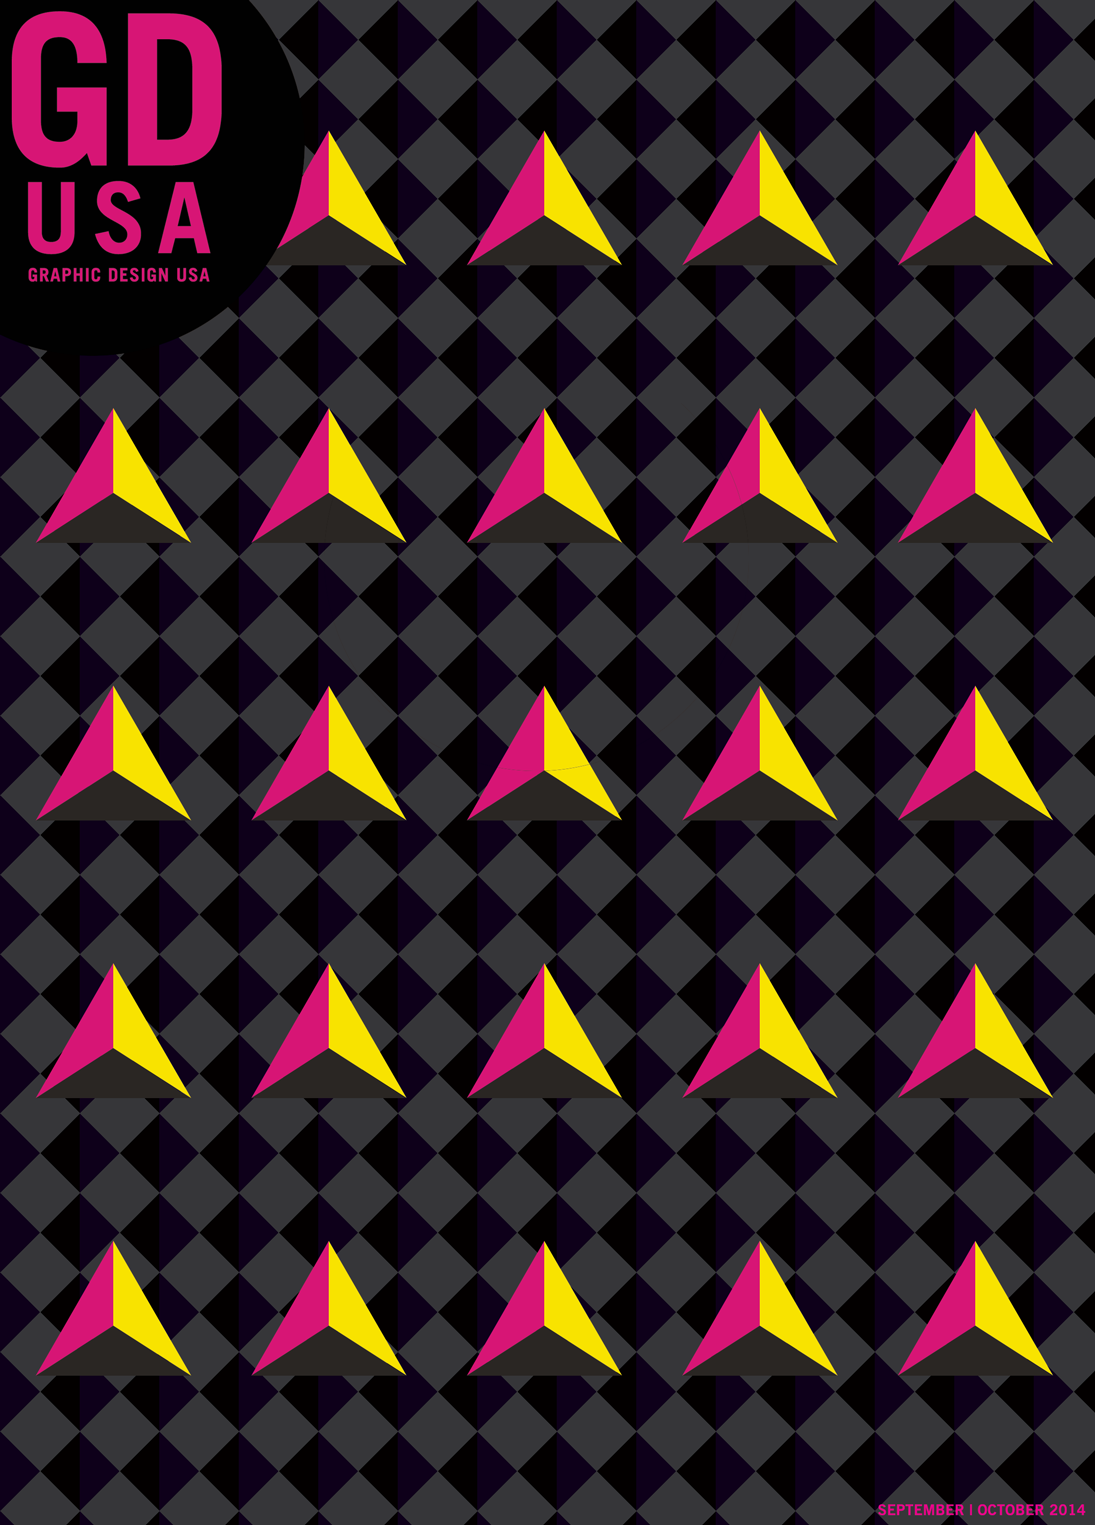 GD USA cover design